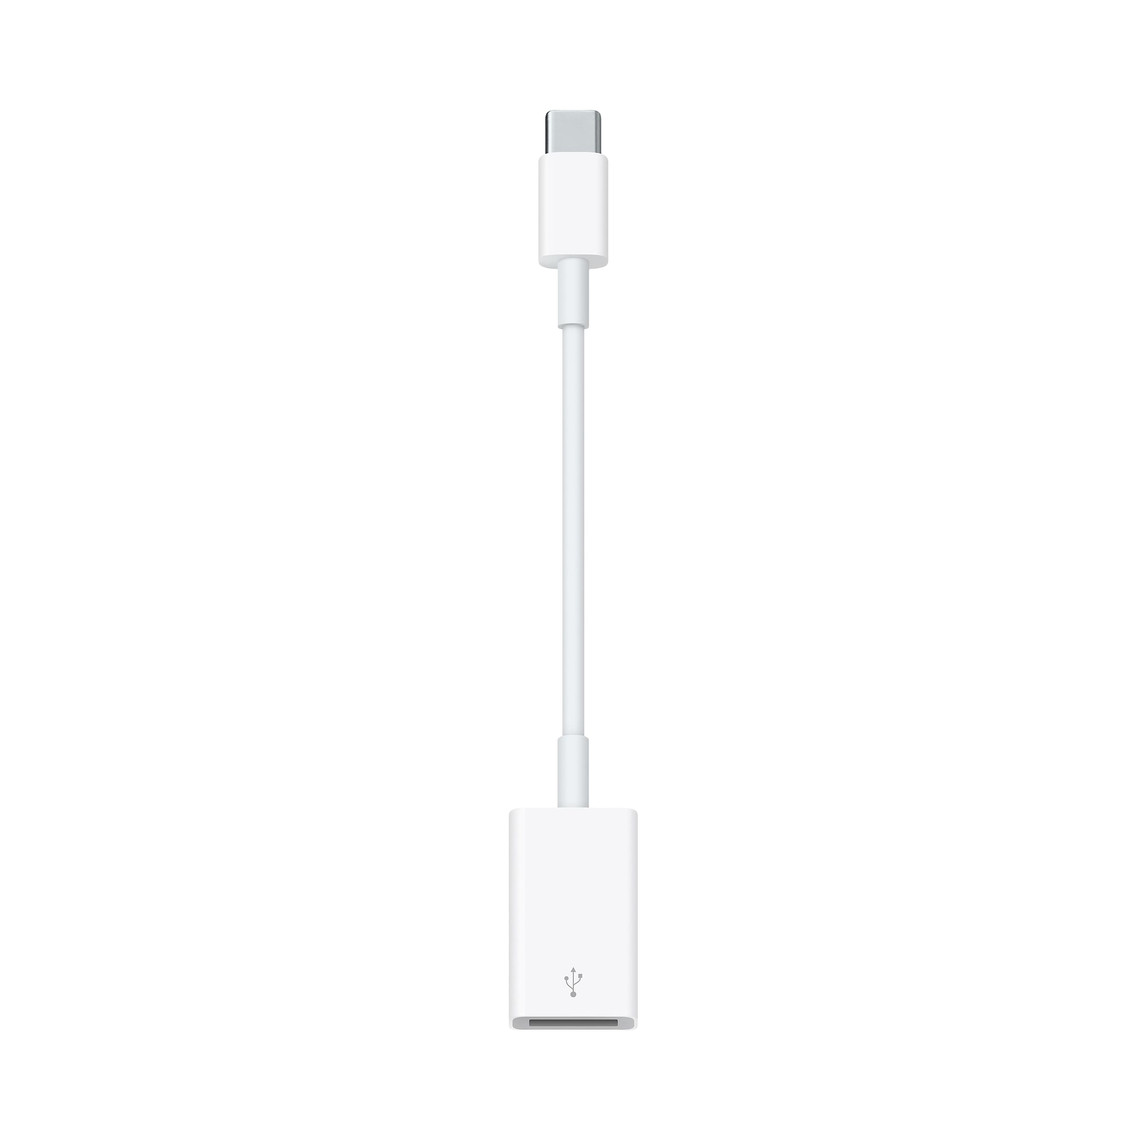 Com o adaptador de USB-C para USB, você conecta aparelhos com iOS e acessórios USB padrão a um Mac com porta USB-C ou Thunderbolt 3 (USB-C).